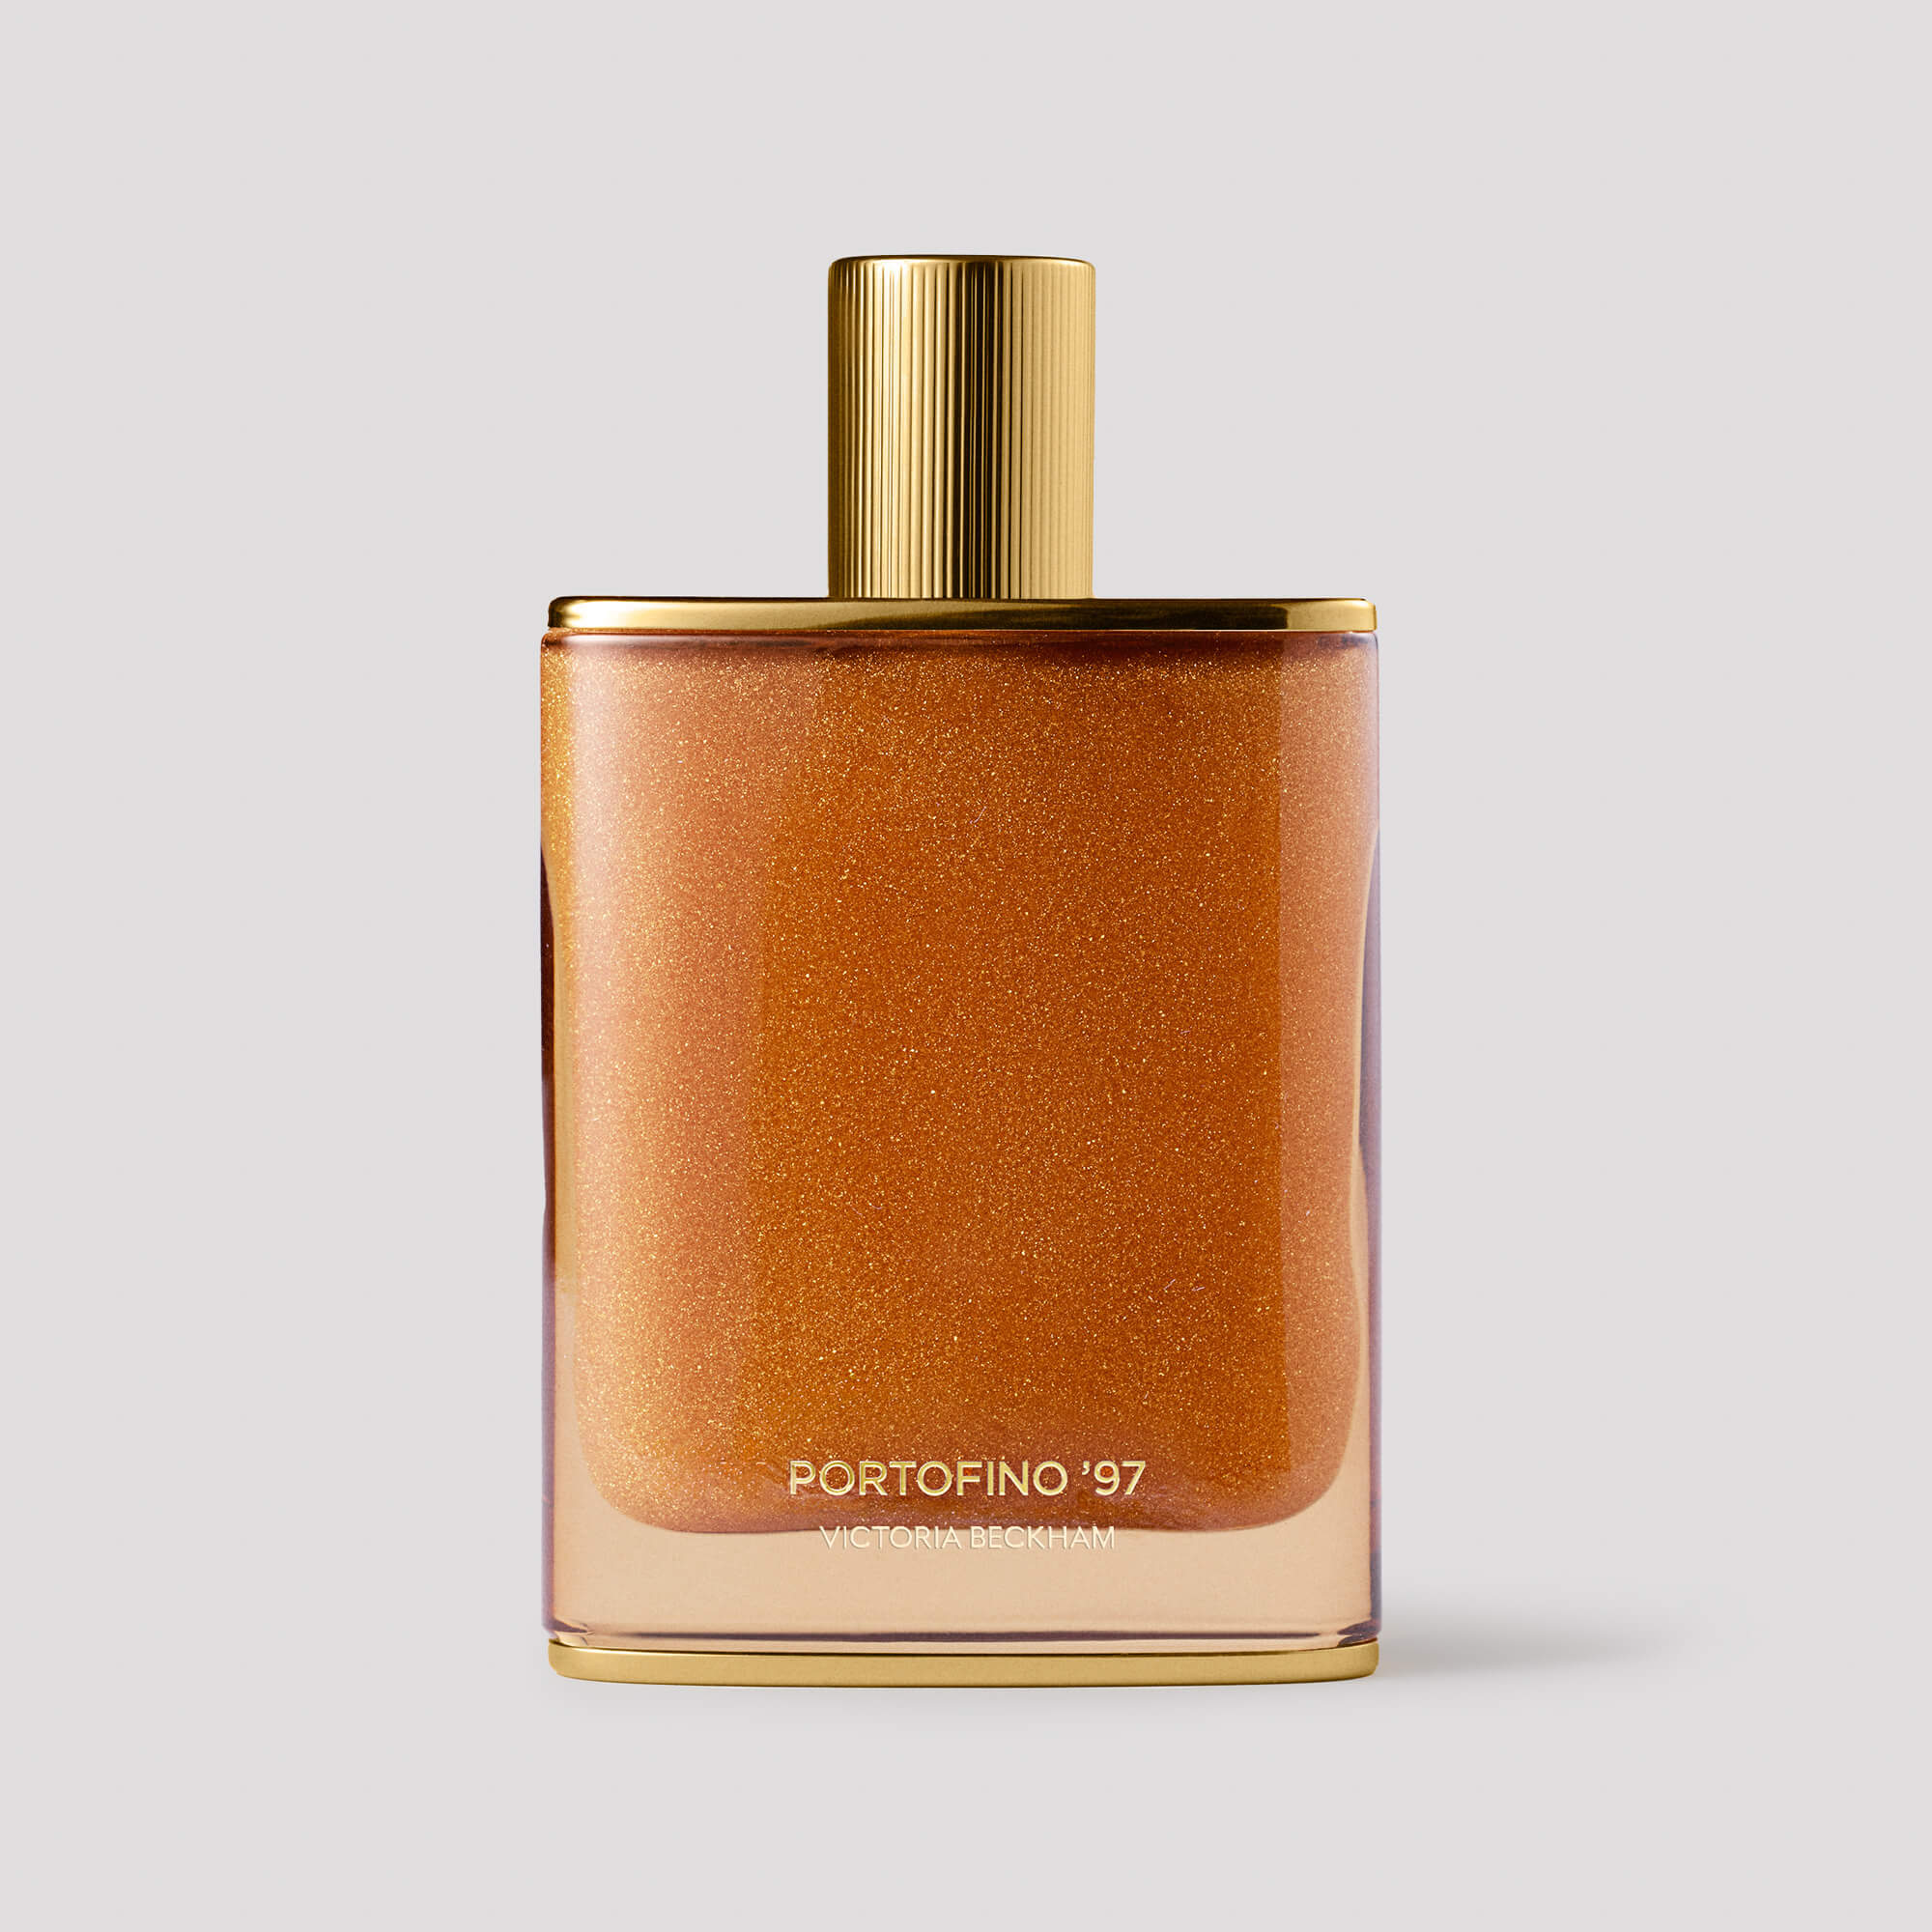 Portofino '97 Golden Shimmer Body Oil